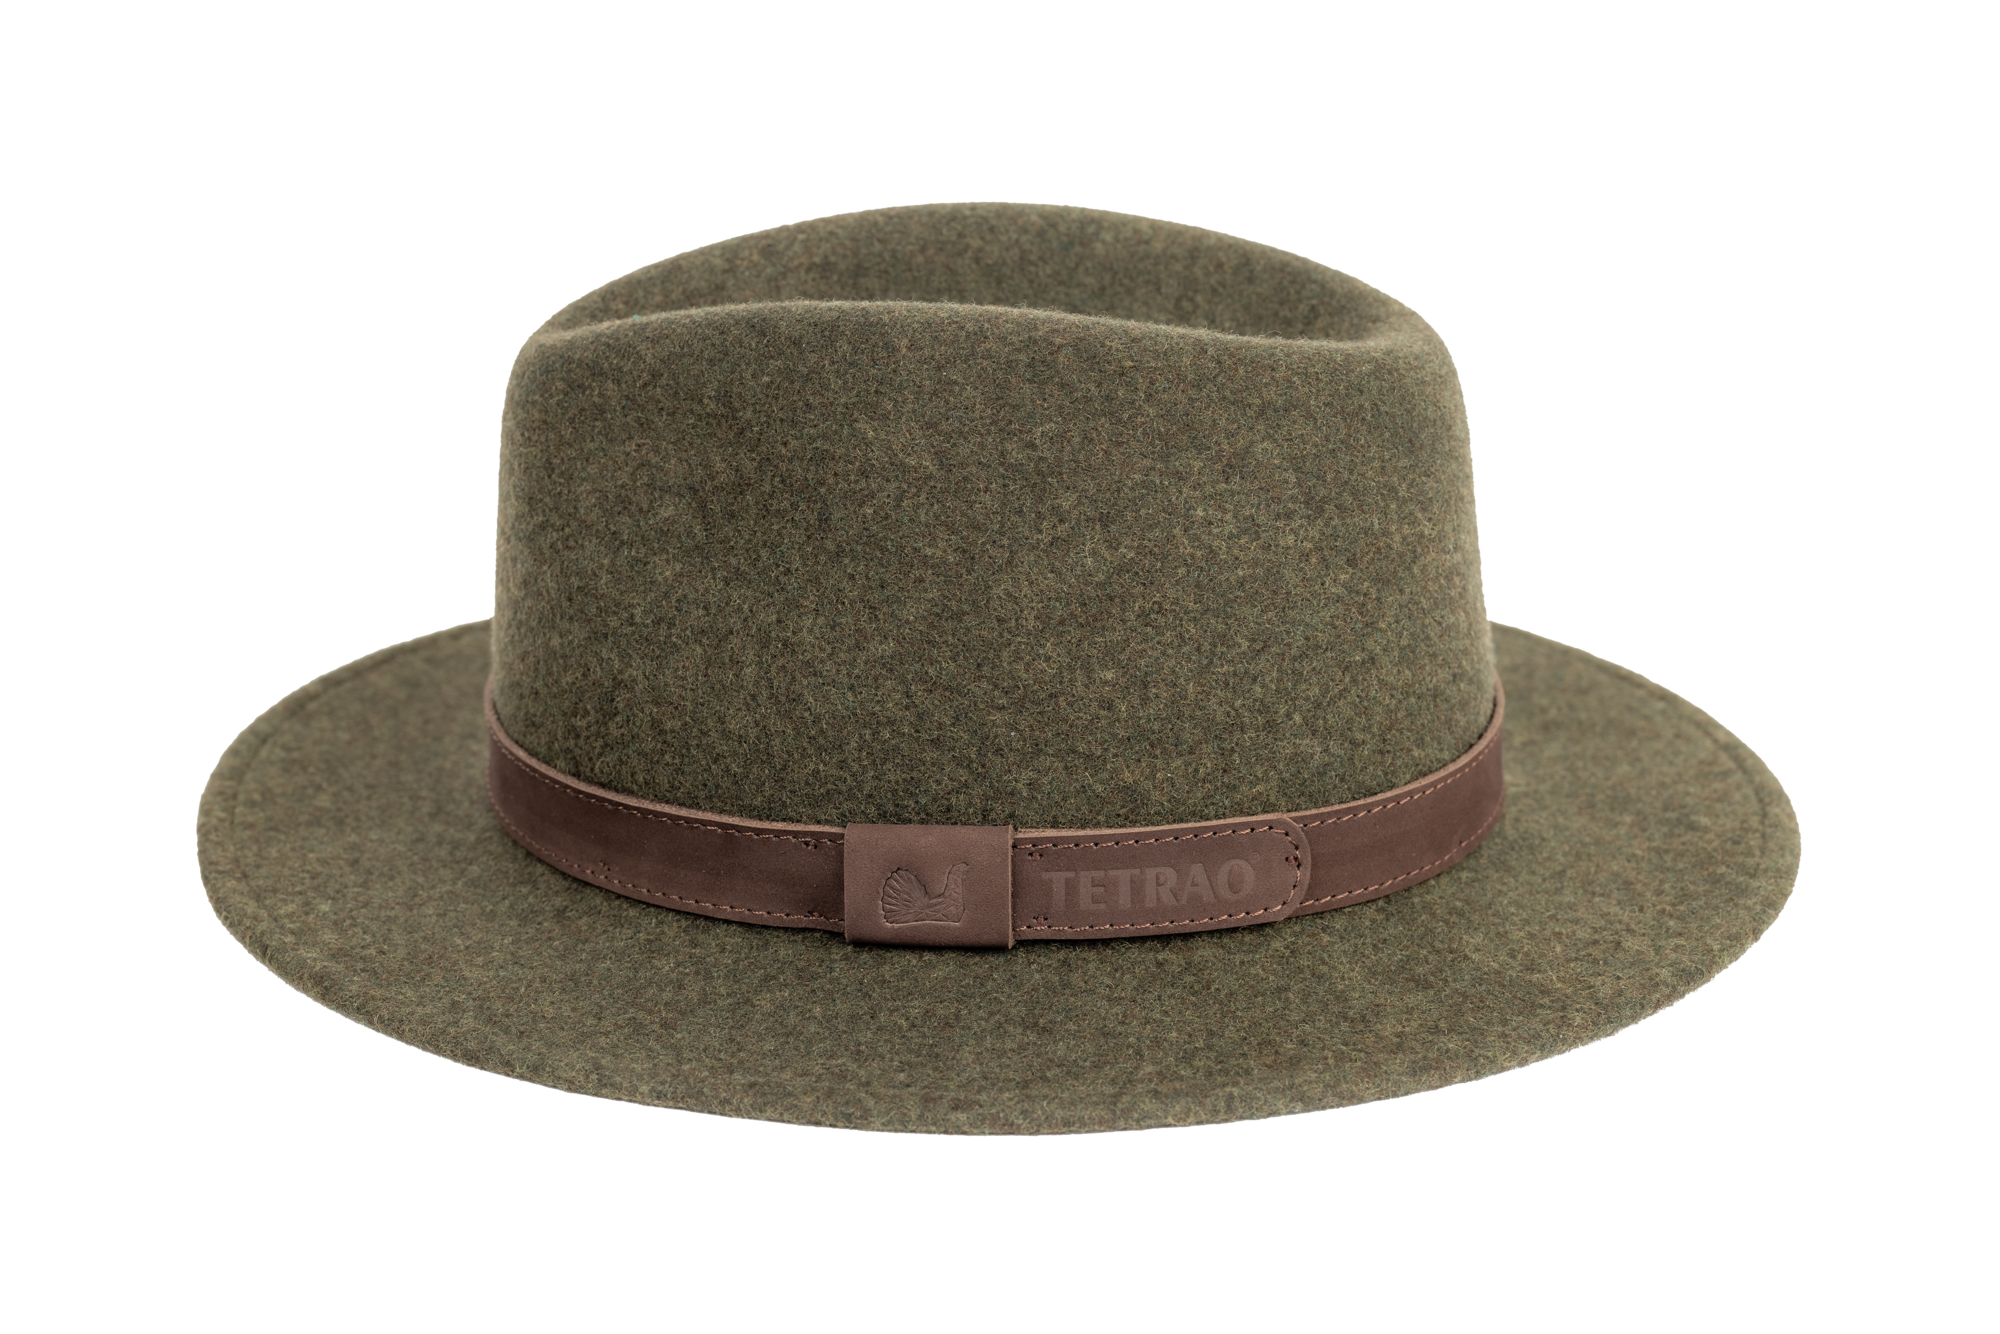 Poľovnícky klobúk TETRAO melanž UNI - zelený  61